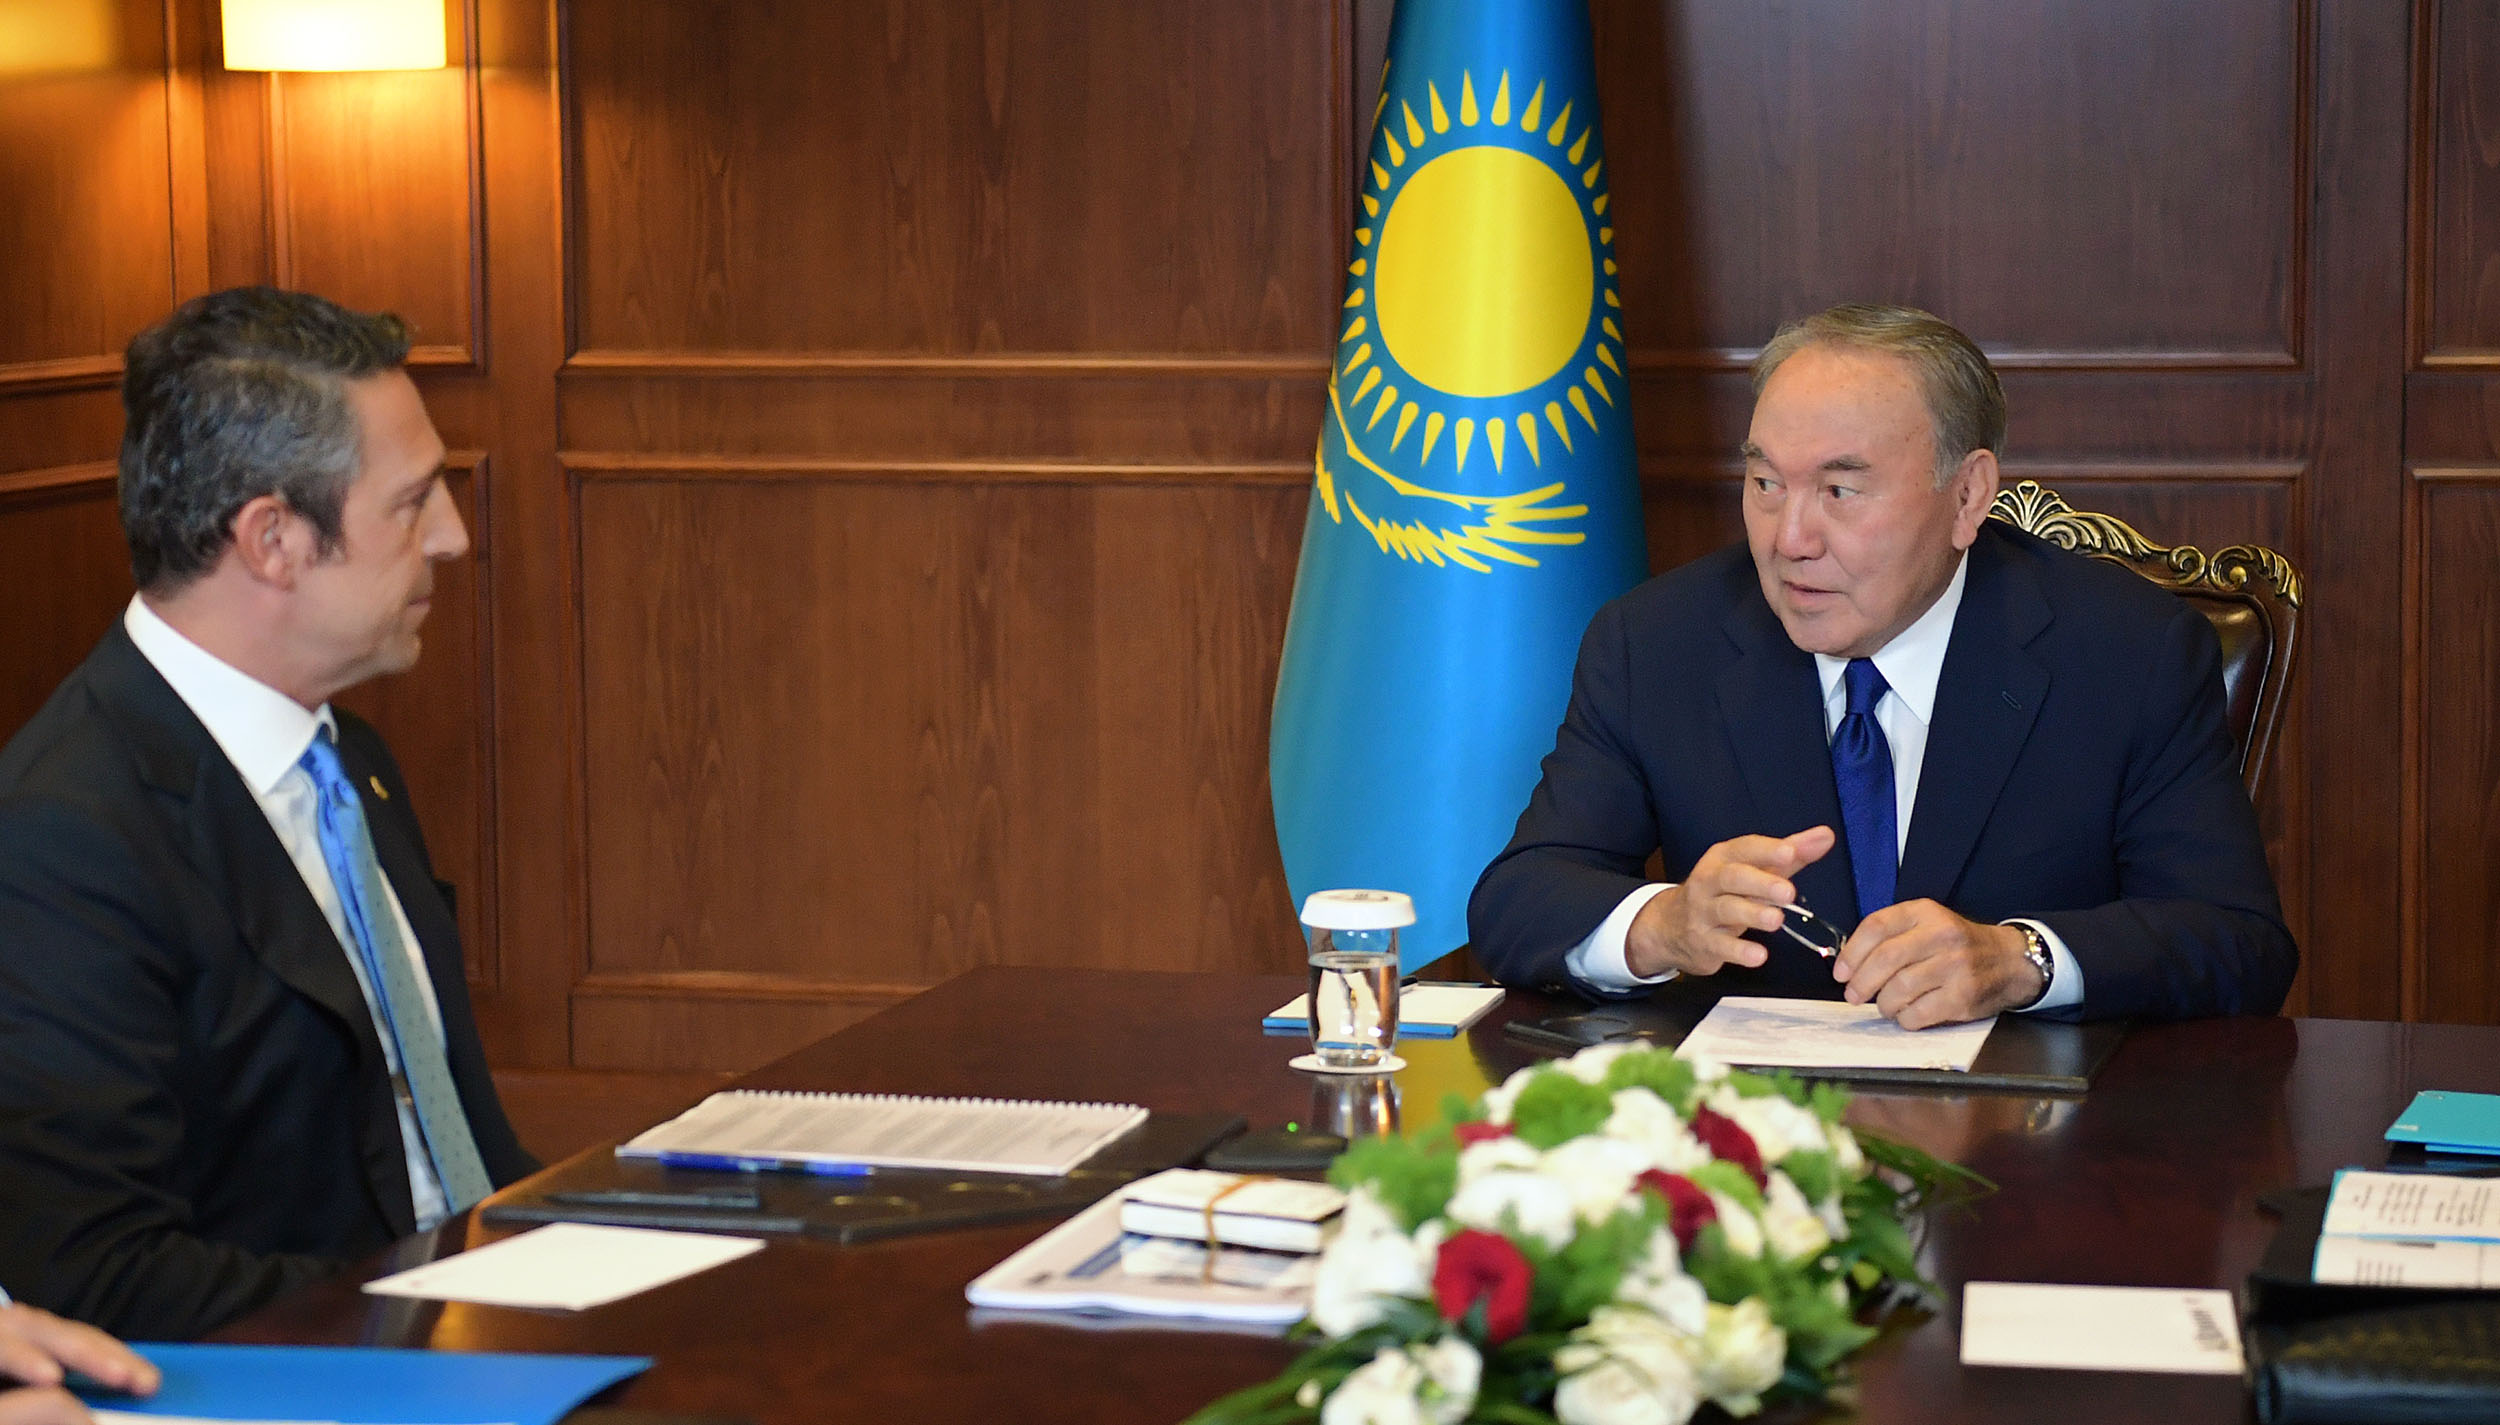 Нұрсұлтан Назарбаев «Коч Холдинг» компаниясы басқармасының төрағасы Али Йылдырым Кочпен кездесті